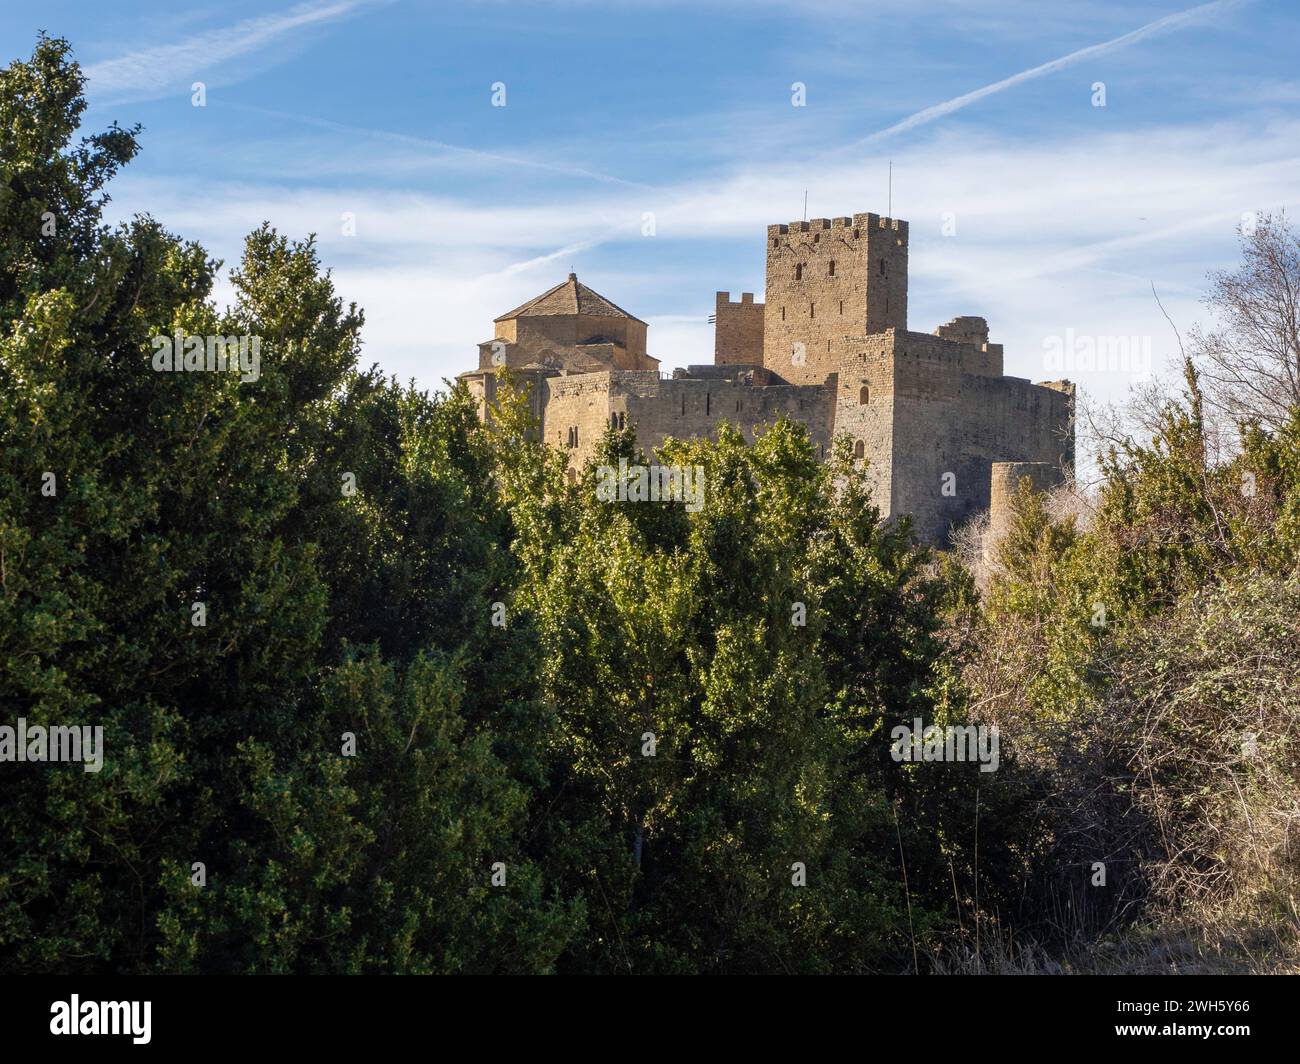 Castello di Loarre fortificazione difensiva romanica medievale romanica Huesca Aragona Spagna uno dei castelli medievali meglio conservati in Spagna Foto Stock